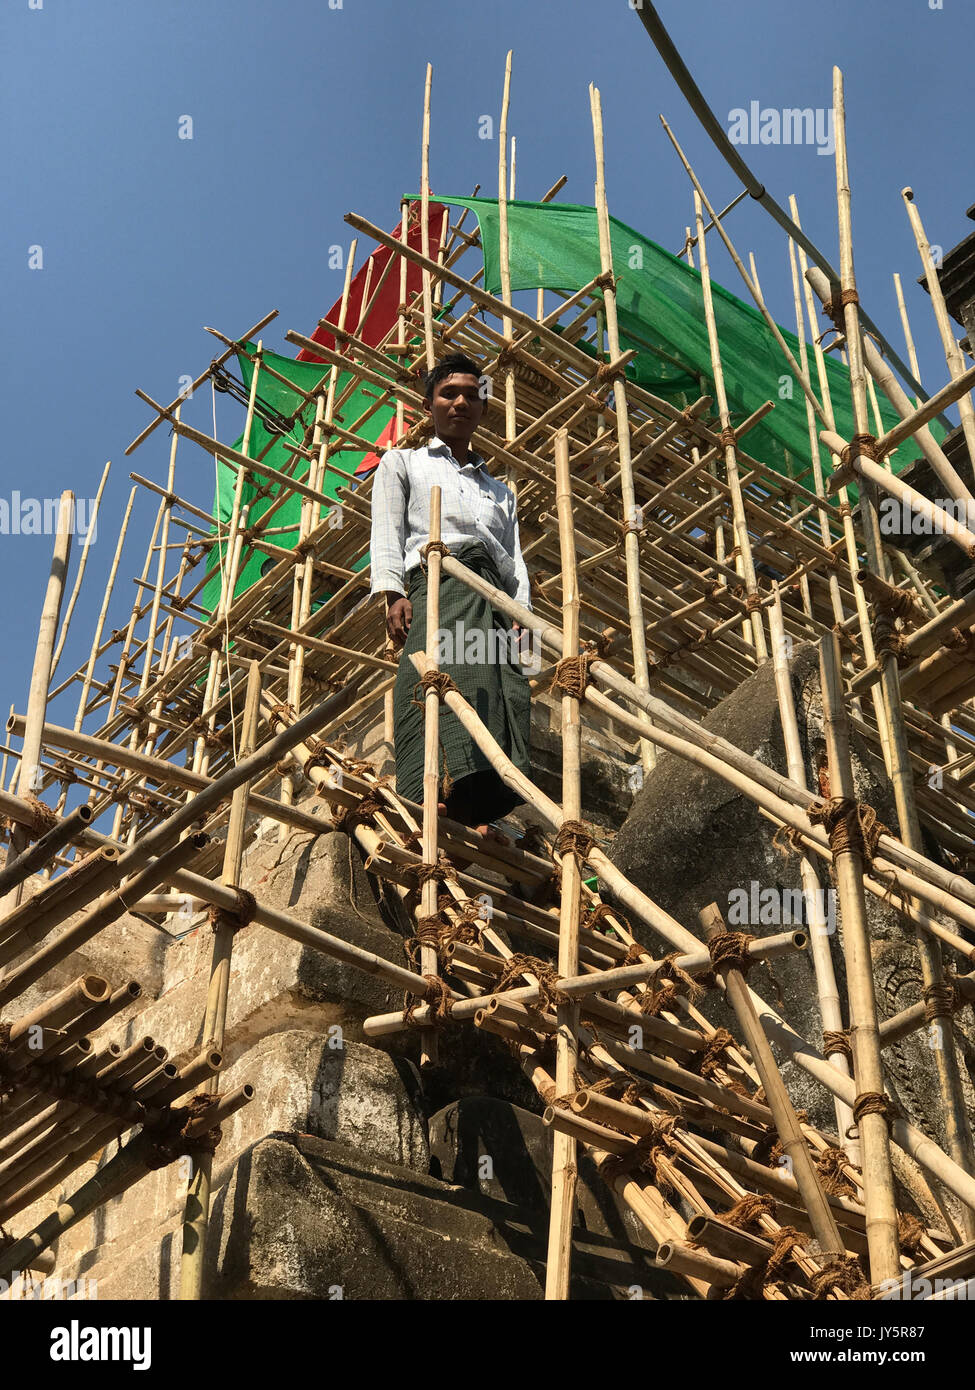 Fichier - File photo datée du 23 février 2017 montrant un travailleur de la construction sur un échafaudage en face d'un temple dans la vieille ville royale de Bagan au Myanmar. Bagan est visant à être classé par l'UNESCO comme site du patrimoine mondial. Cela peut être difficile en raison de l'inadéquation des rénovations effectuées au cours des dernières années. Cependant, il y a maintenant un peu d'espoir. Photo : Christoph Sator/dpa Banque D'Images